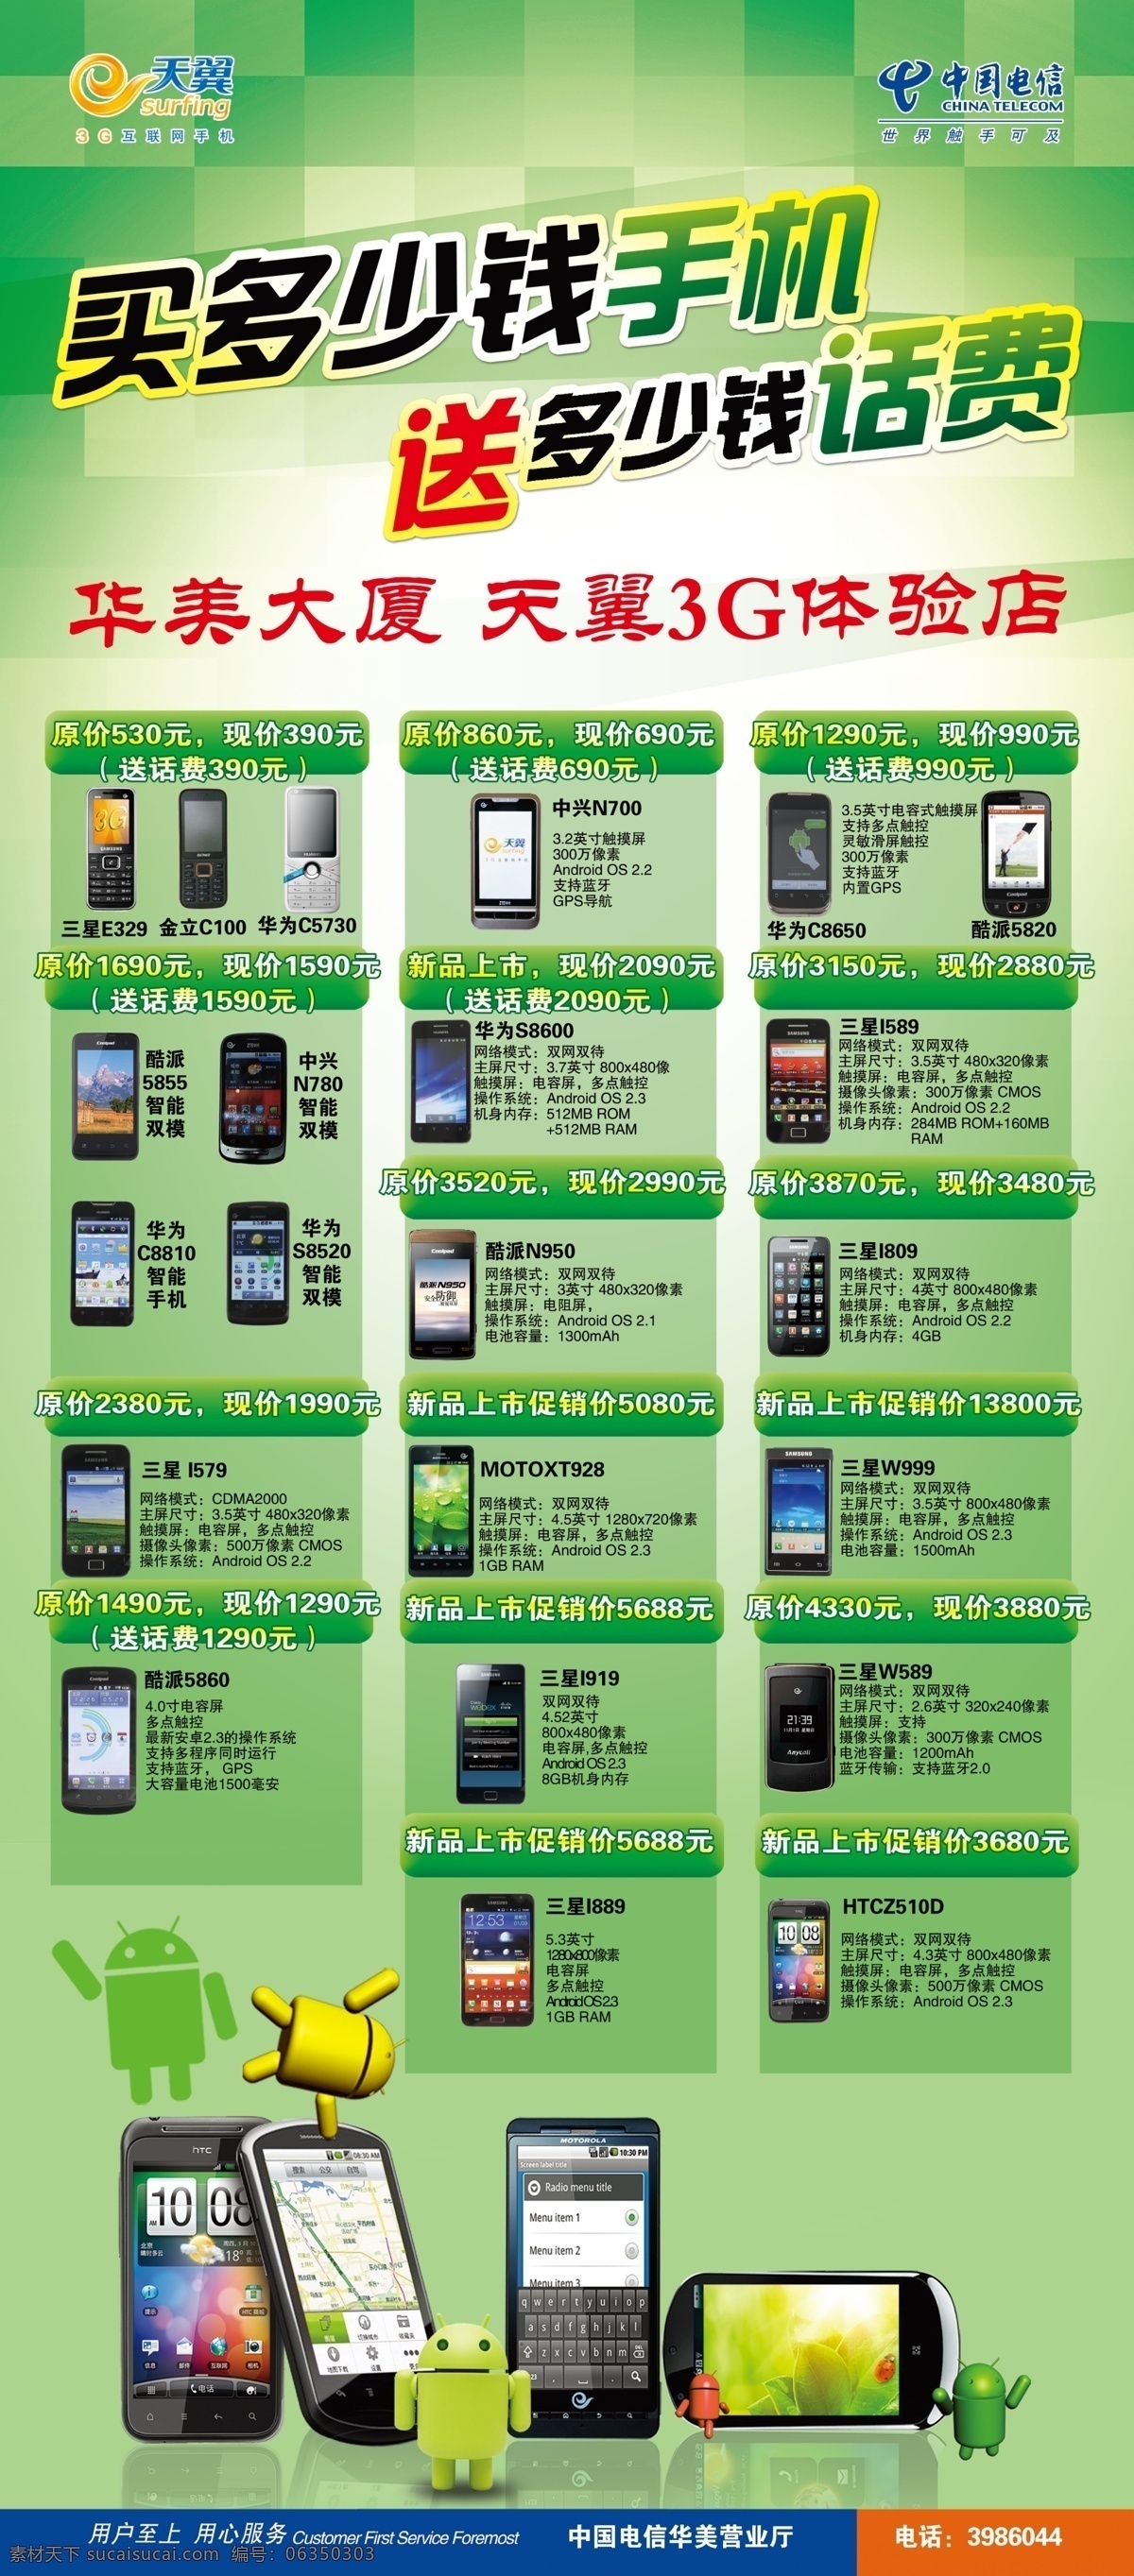 中国电信 买 手机 送 话费 展架 安卓 广告设计模板 买手机送话费 源文件 其他海报设计